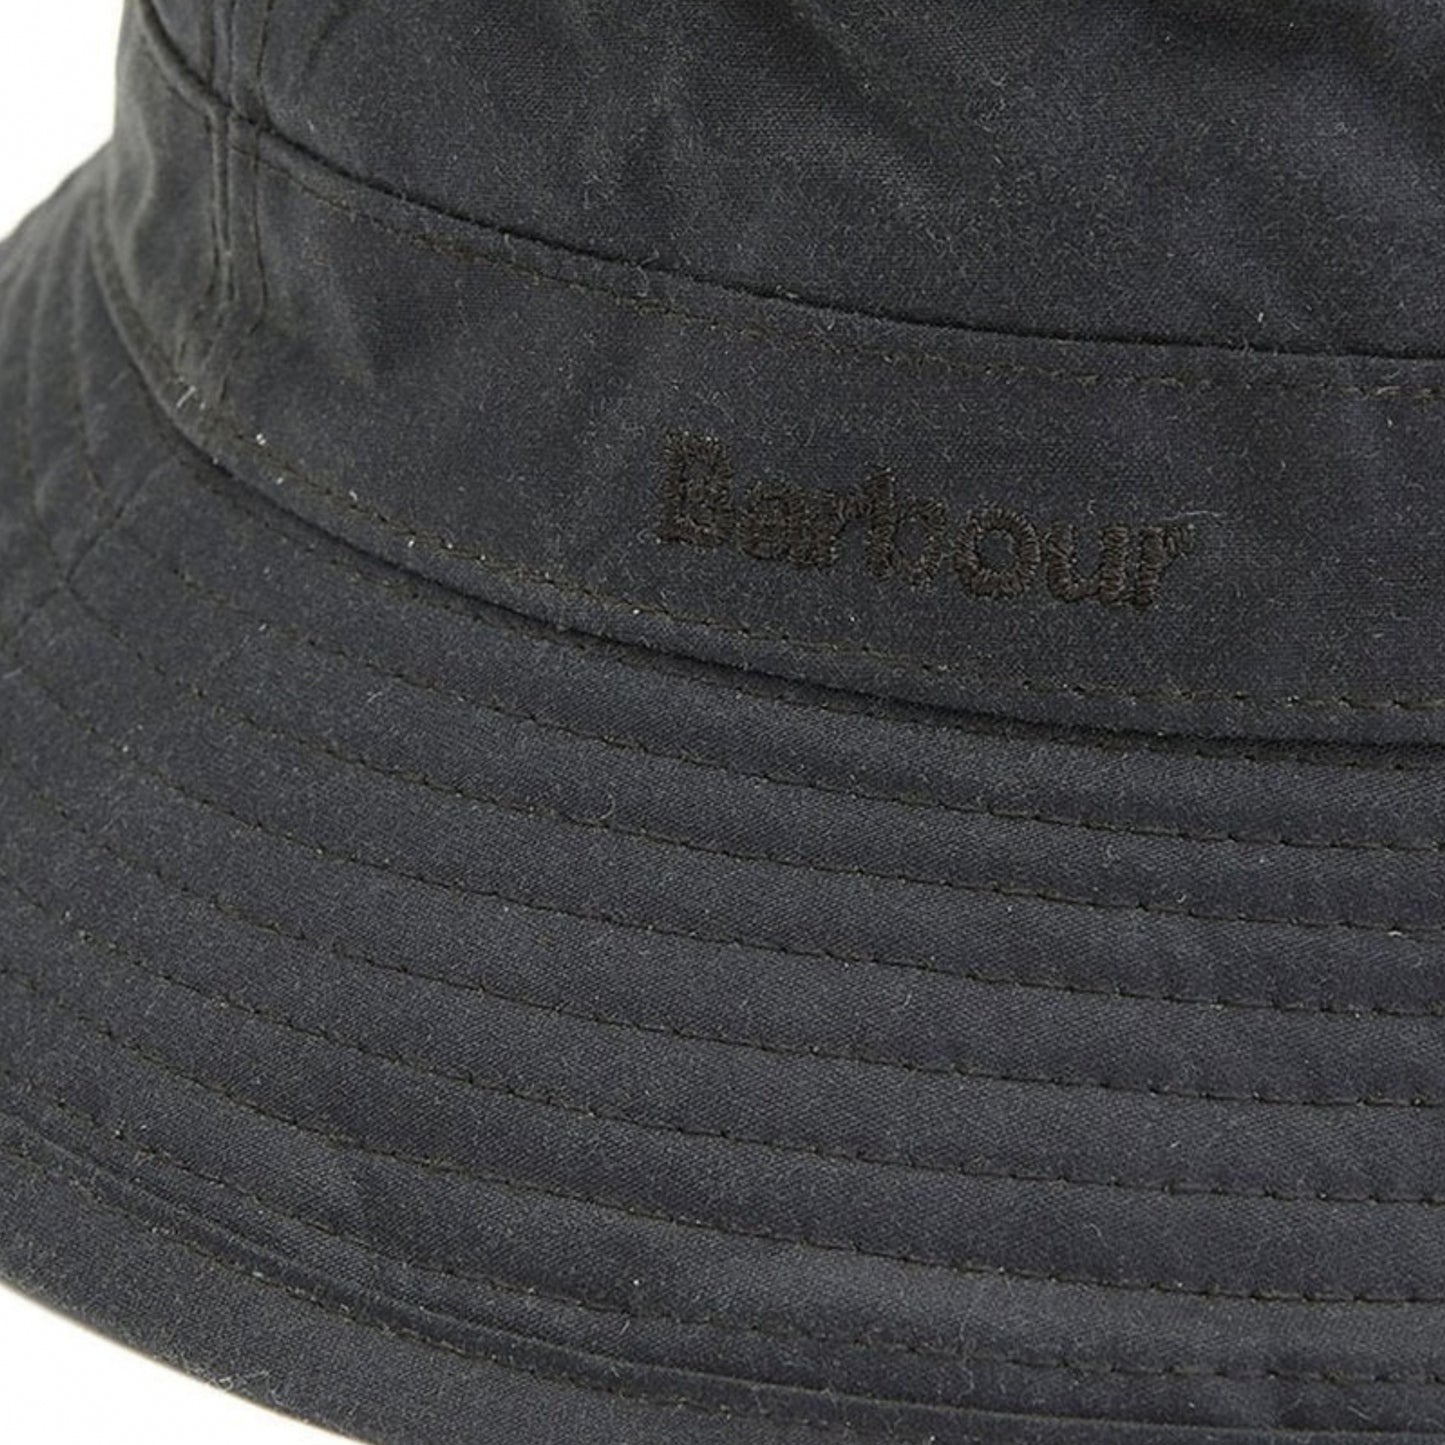 Cappello Barbour Wax Sport Hat VERDE